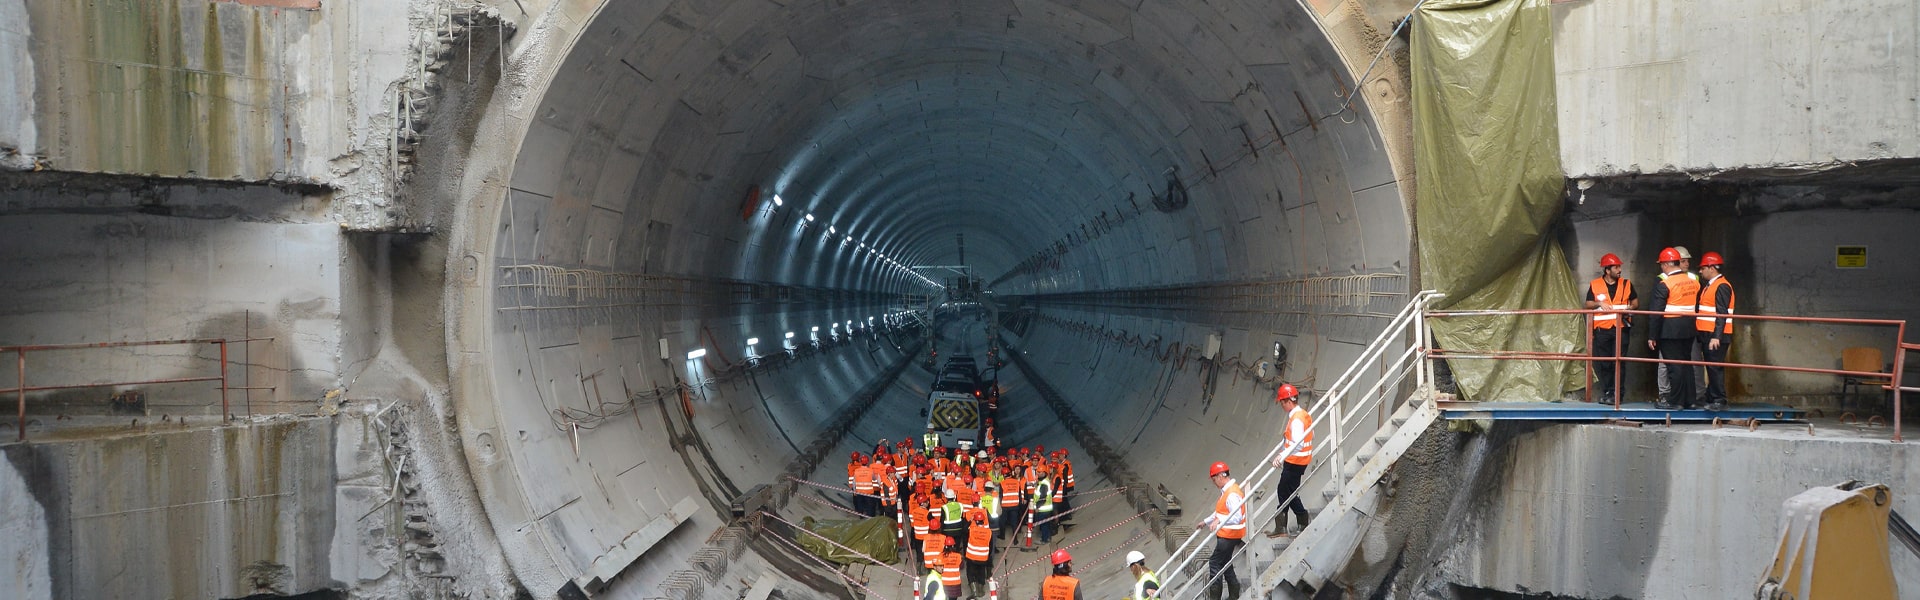 tunnel solution concrete underground